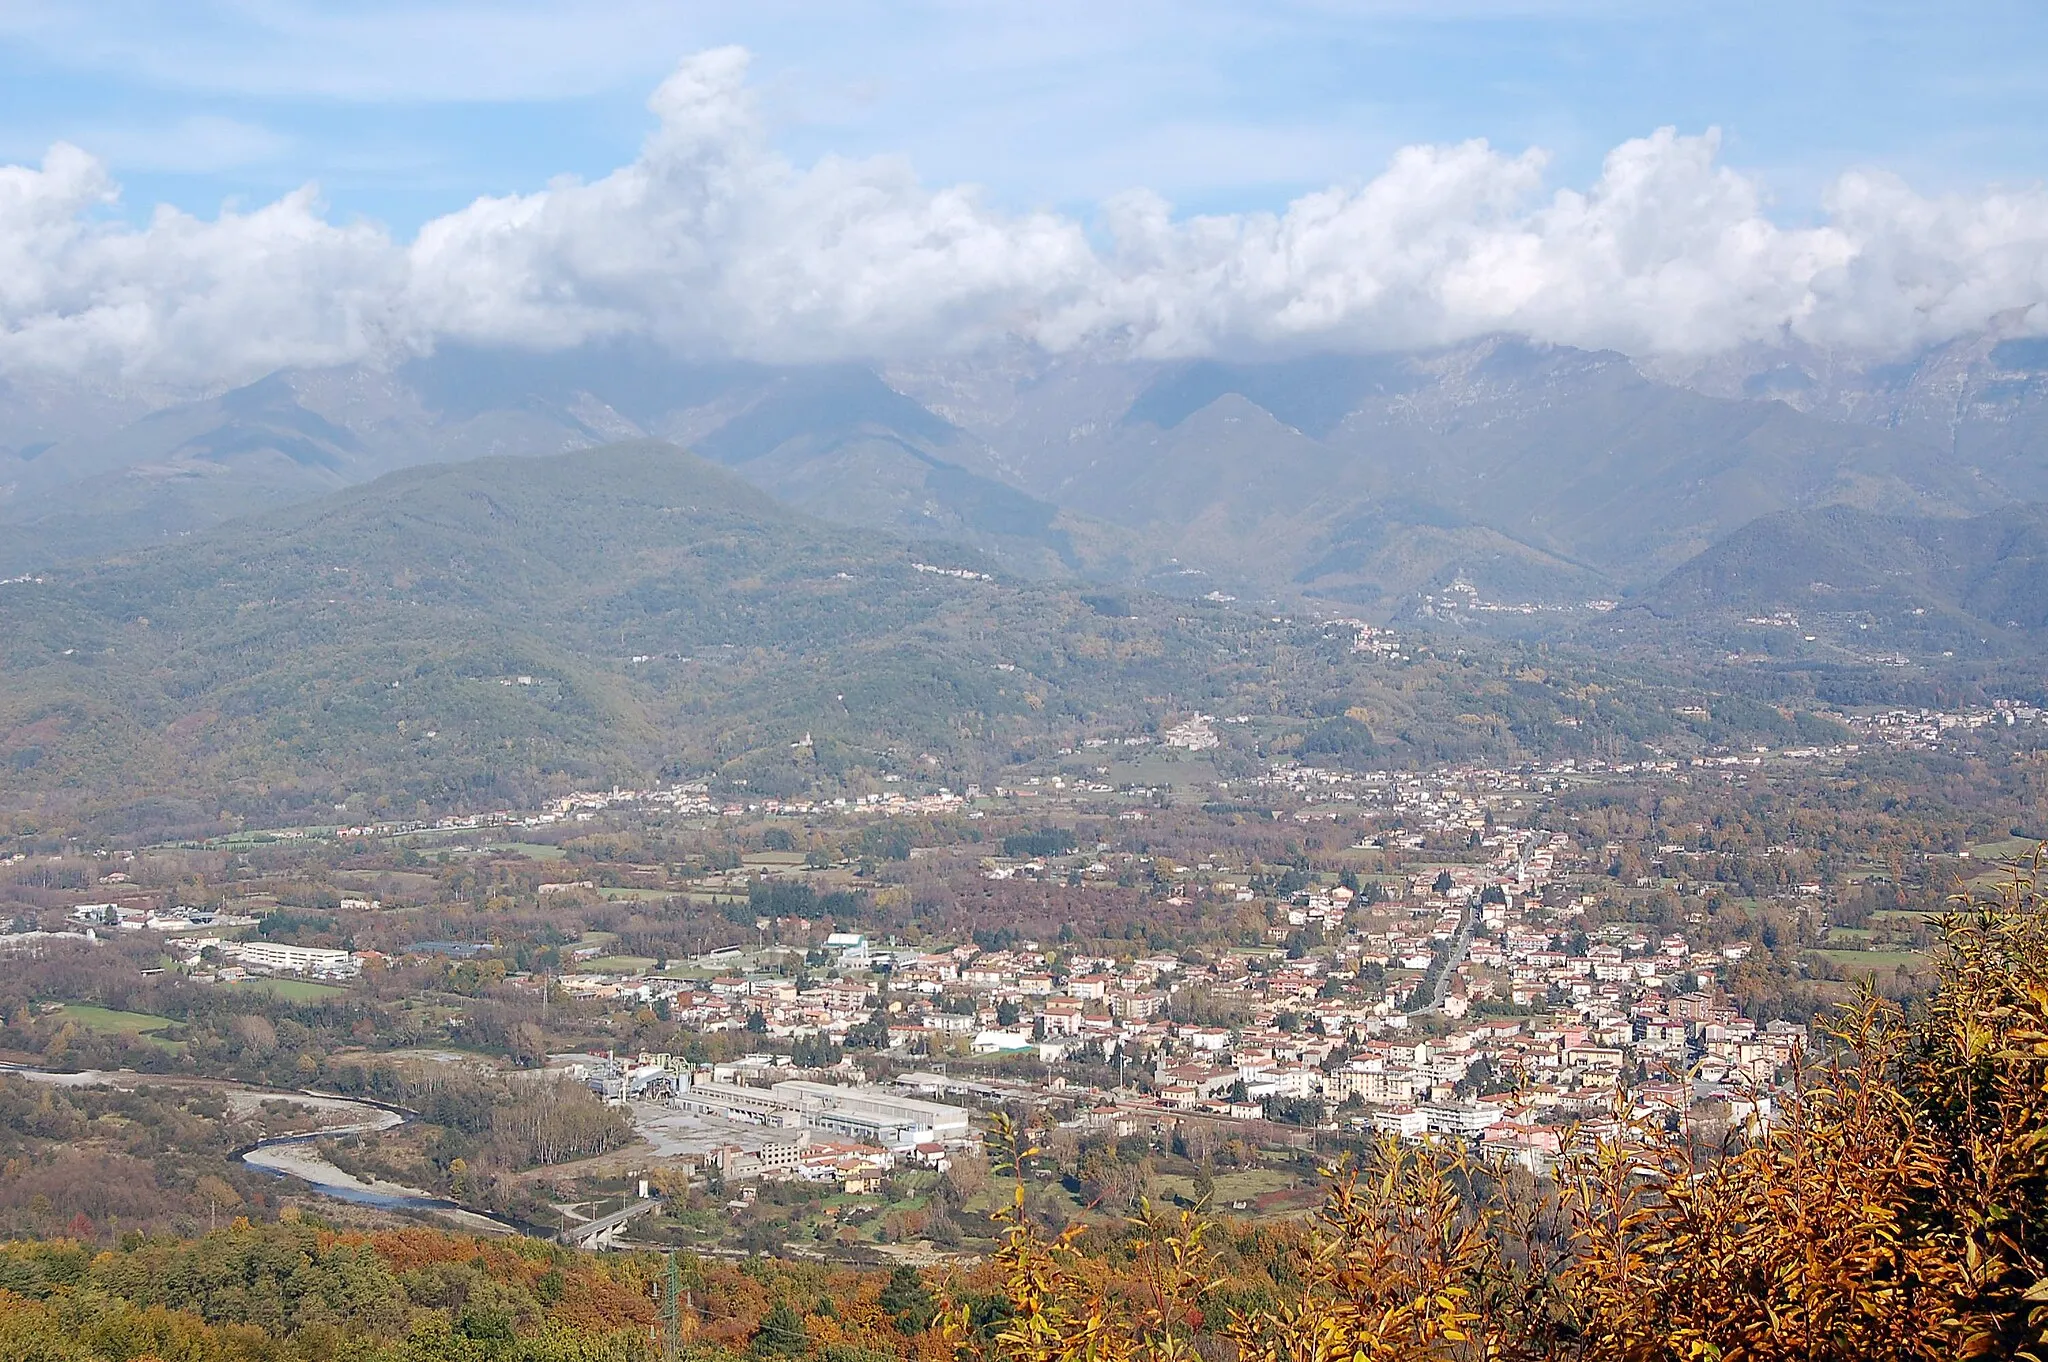 Image of Villafranca in Lunigiana